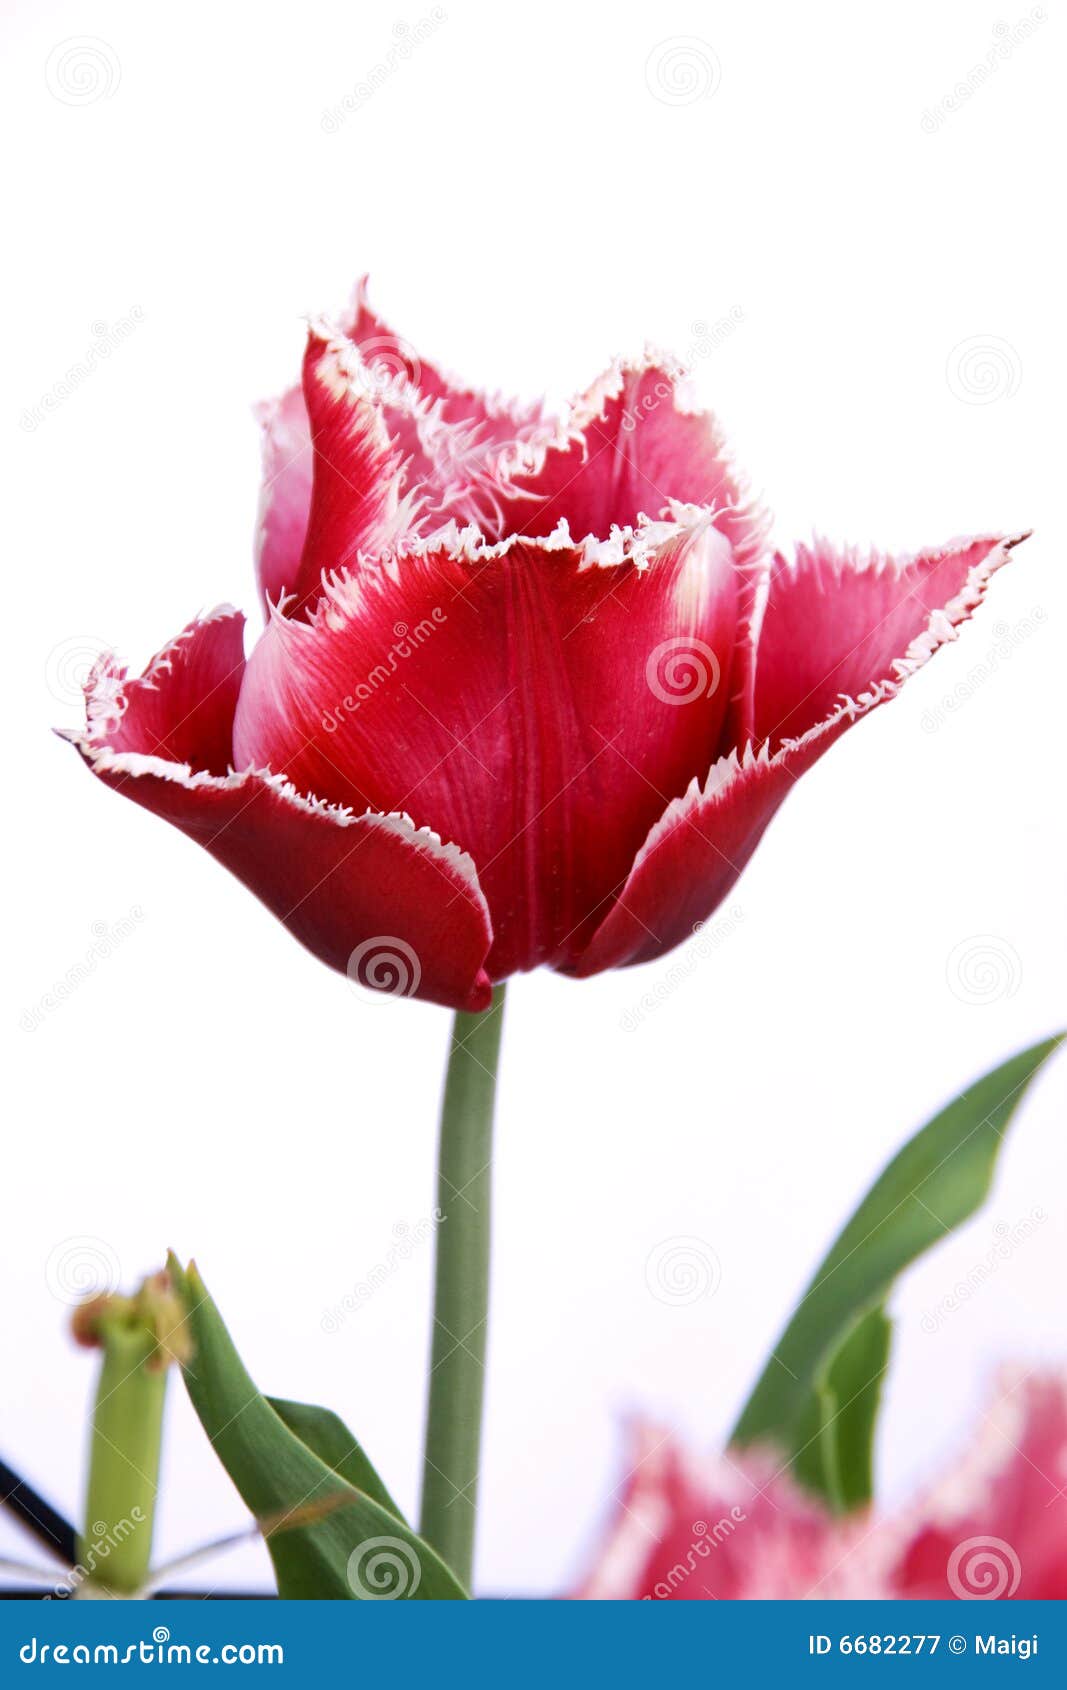 canasta tulip